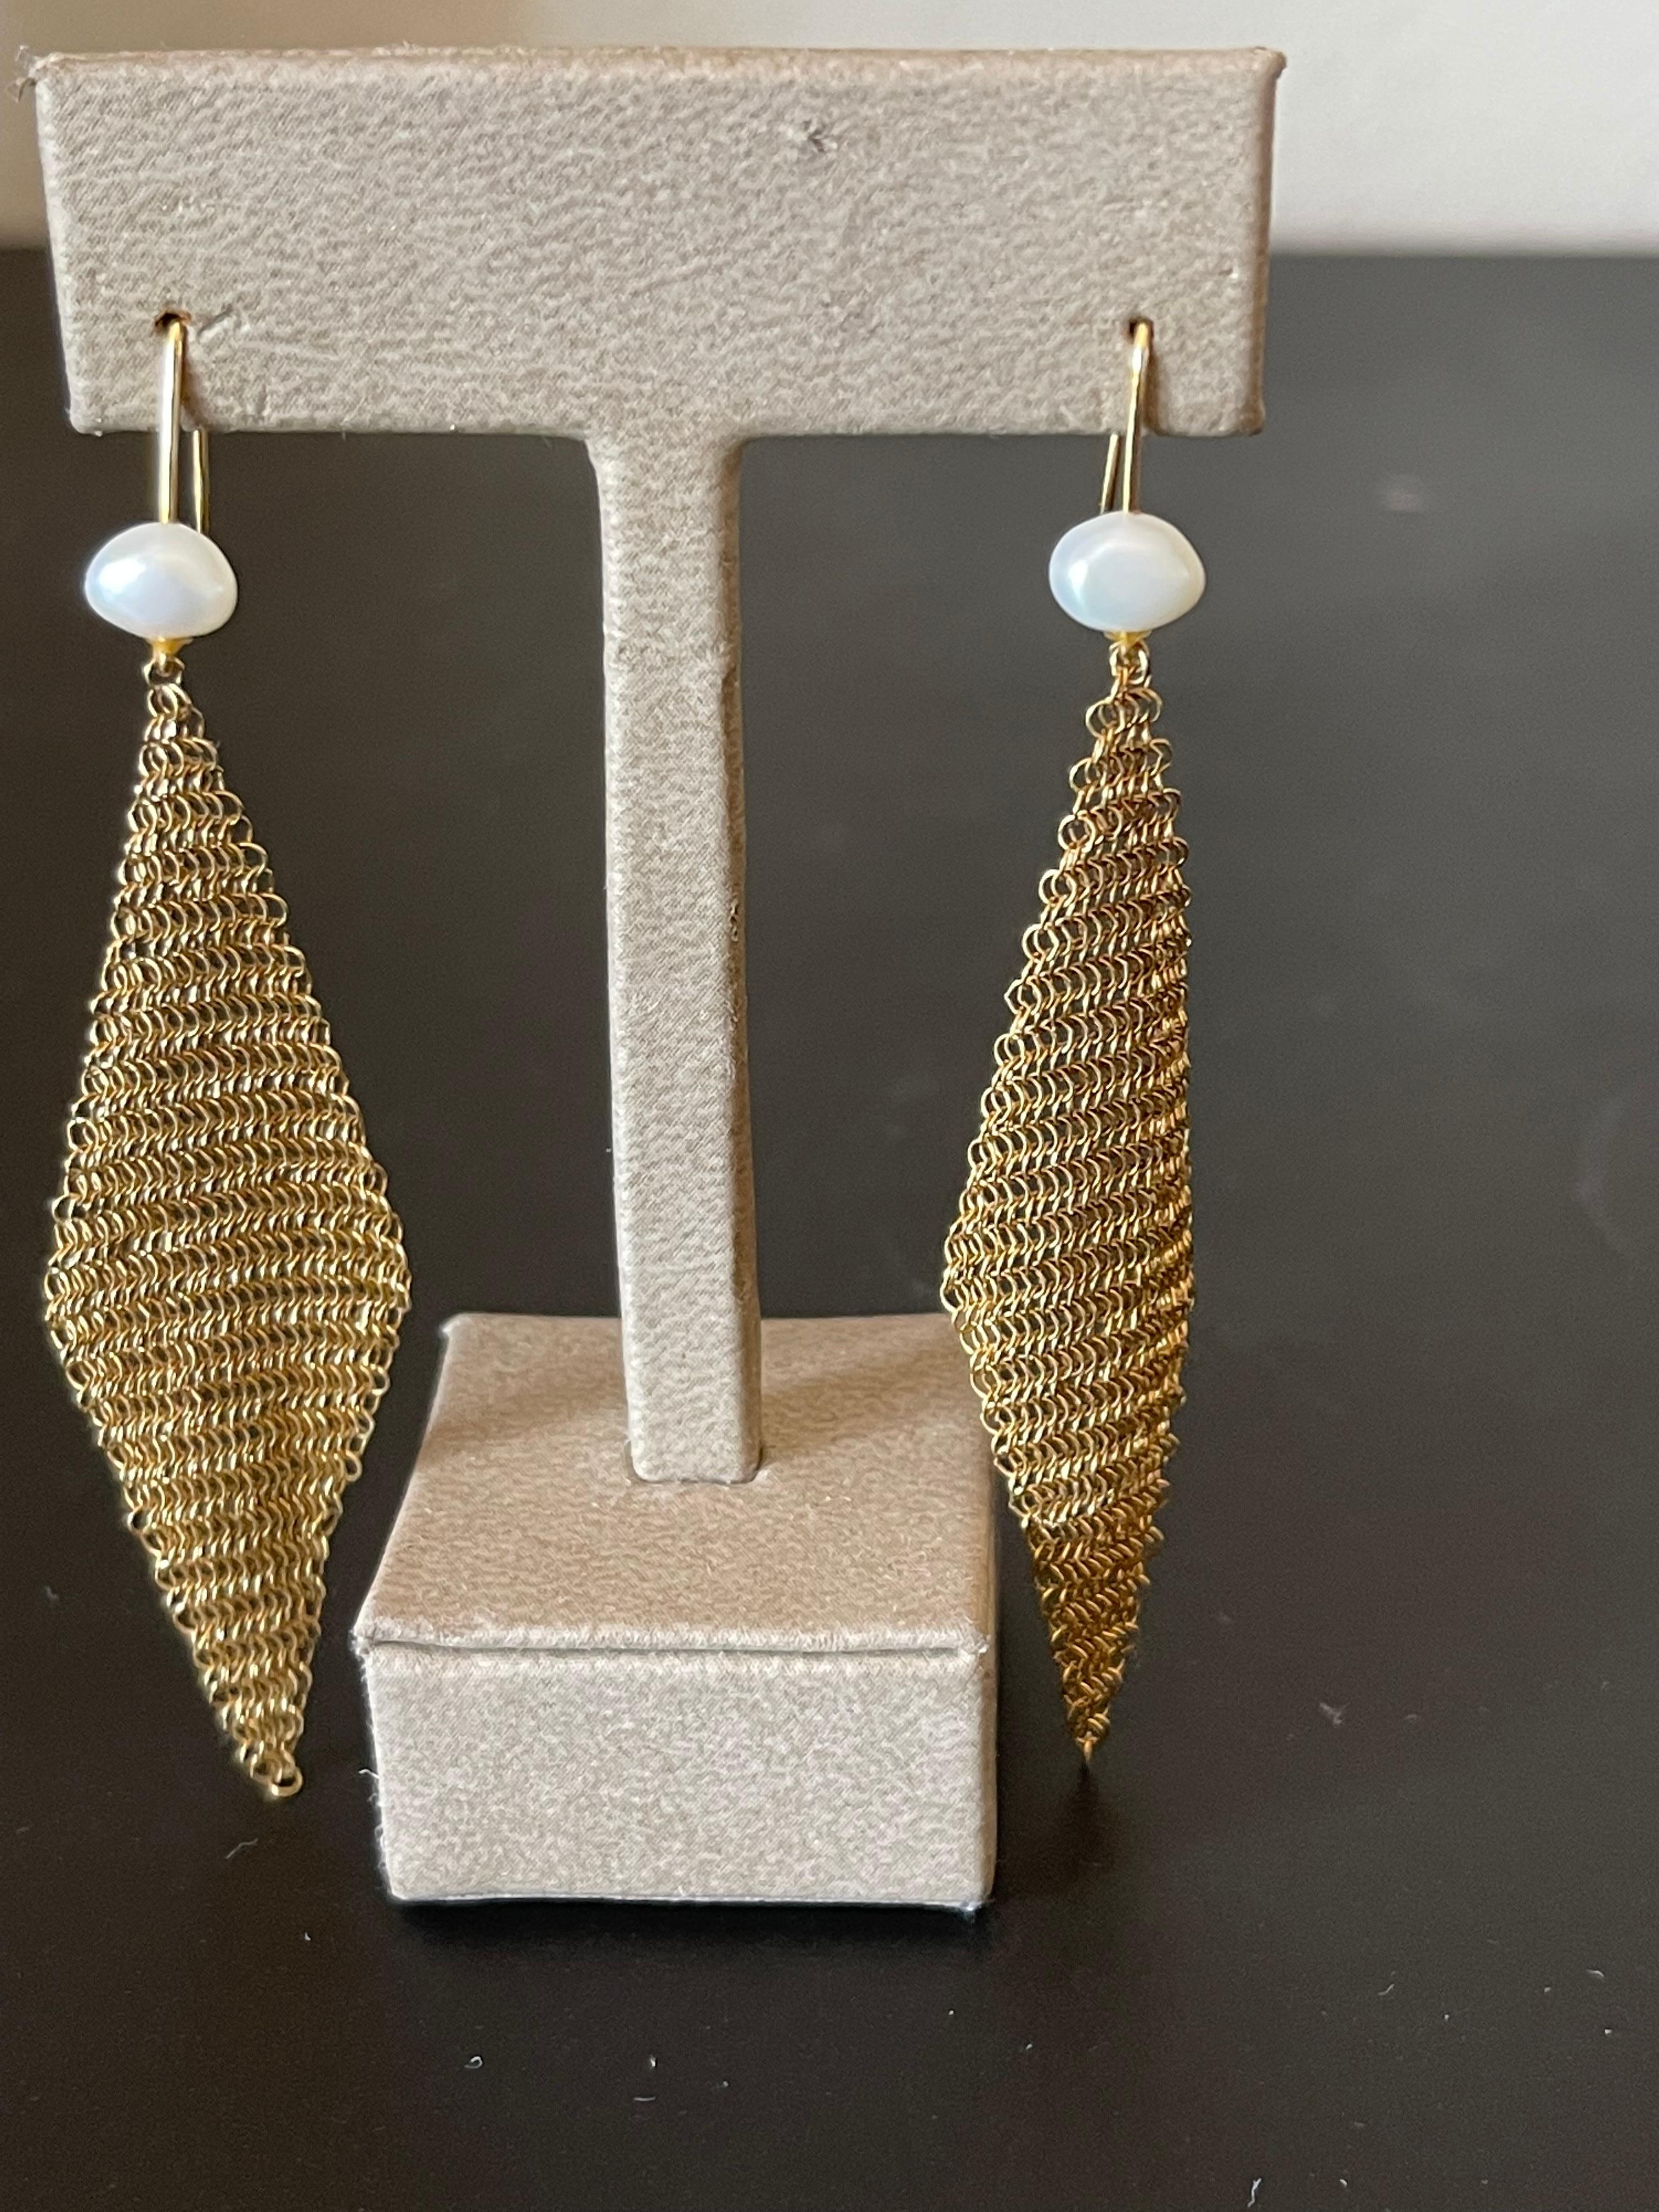 collier à mailles en perles en or jaune 18k  et les boucles d'oreilles assorties d'Elsa Peretti pour Tiffany & Co.  Avec 55 perles de 5mm à 4.5mm. Livré dans la boîte originale de Tifanny & co.
Longueur du collier : 39.5 cm
Largeur du collier :